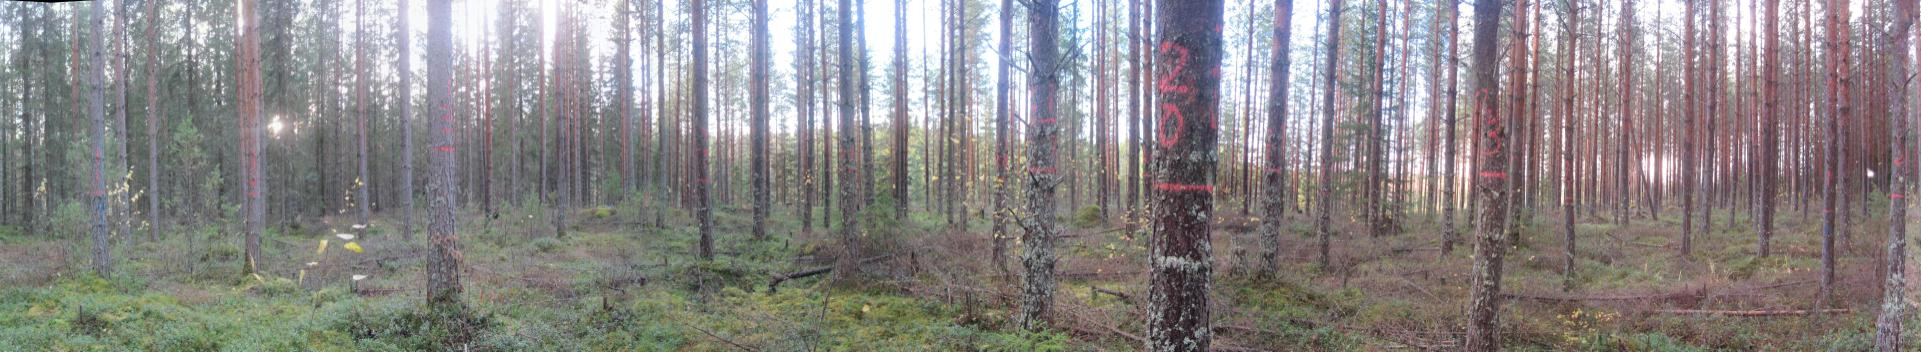 Metsän mittaussovellutuksia Esimerkkejä Argone Oy:n julkisista metsän mittaussovellutuksista Lisätietoja: Argone Oy mikko.miettinen@argone.